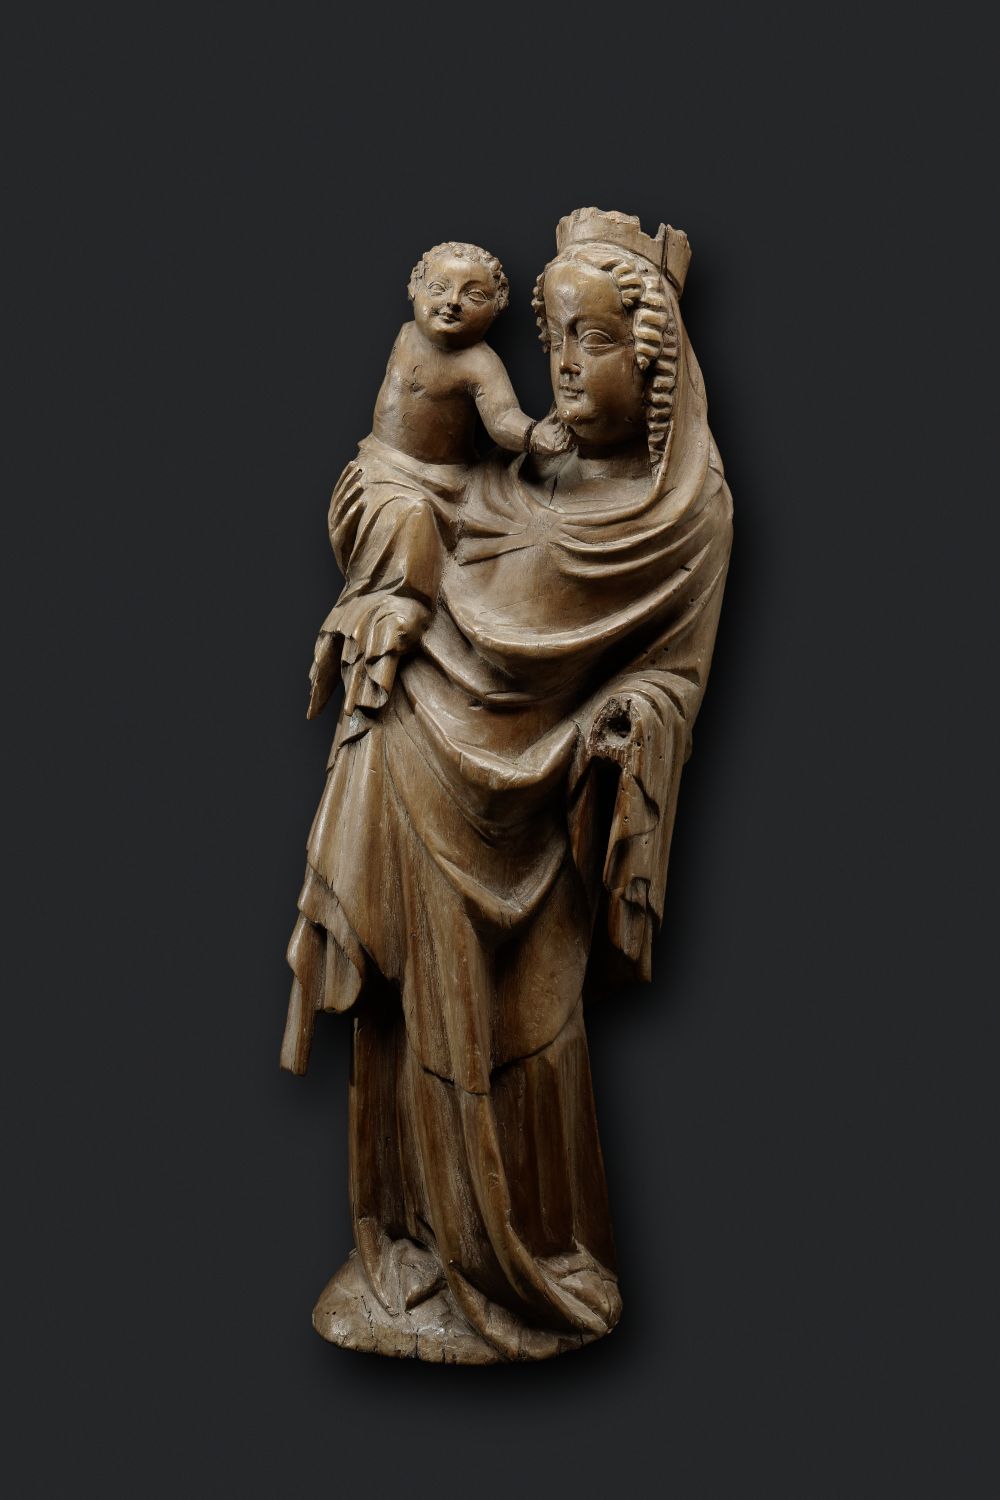 Meister der Nonnberger Madonna, Salzburg, 3. Viertel 14. Jh., Holz, Salzburg Museum, Inv.-Nr. 1068-83